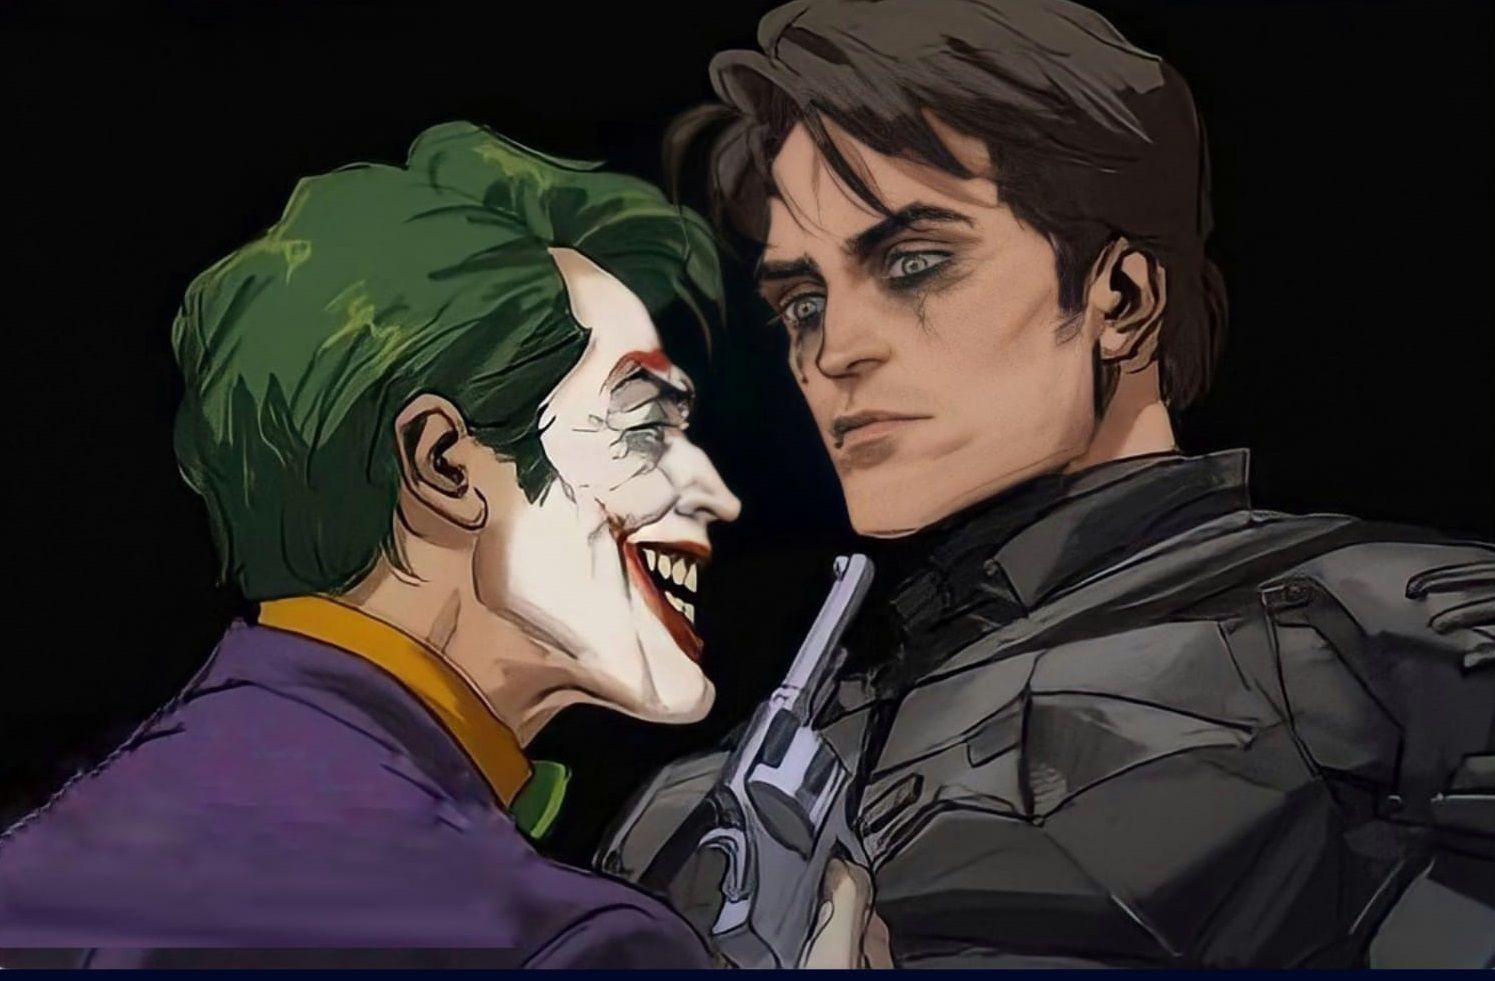 Fan Art Shows Robert Pattinson's Batman with Willem Dafoe as Joker